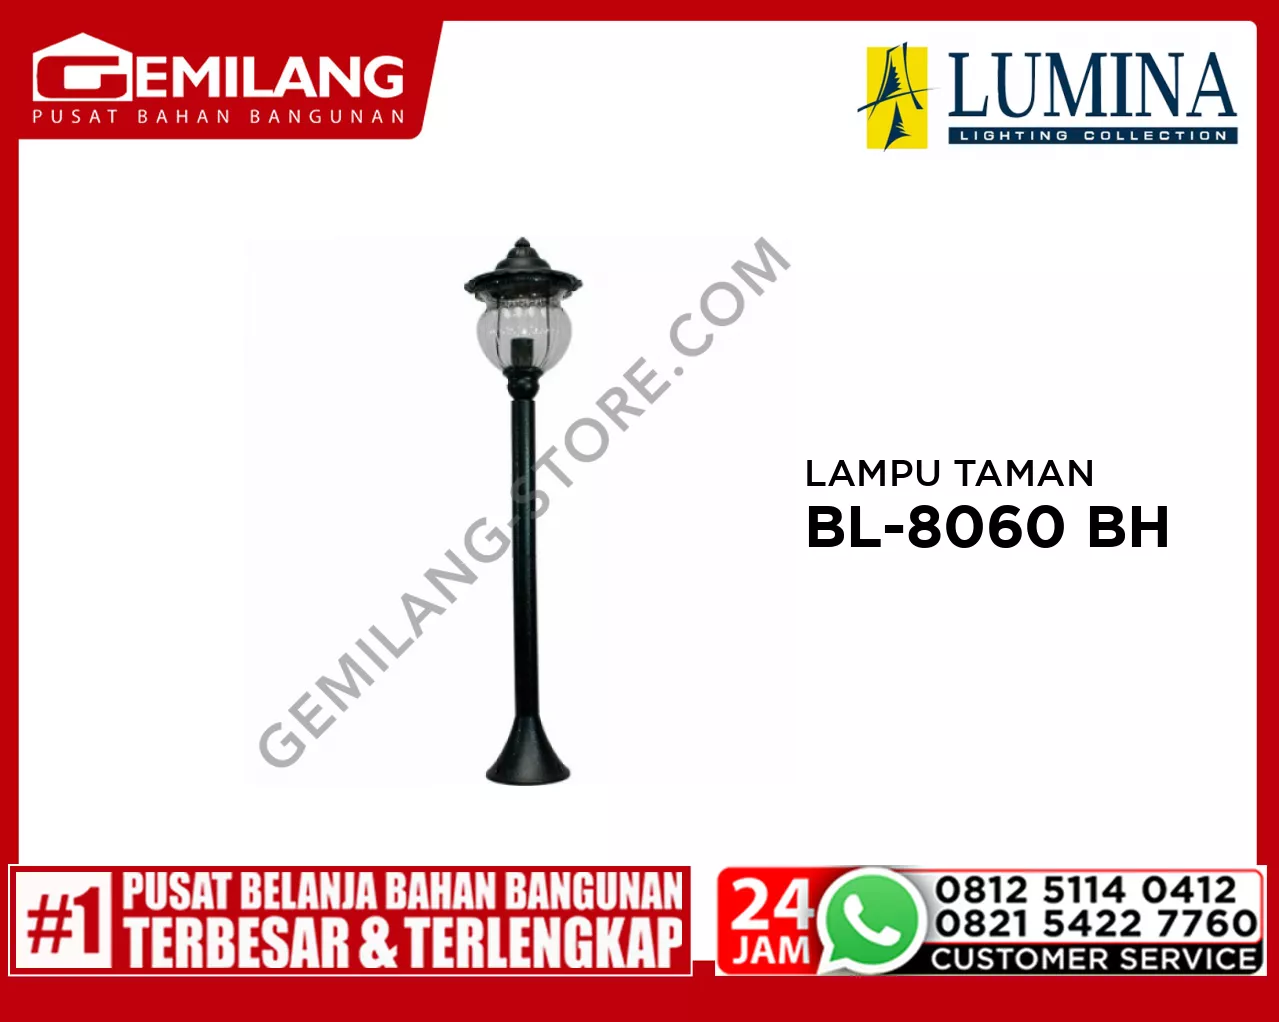 LAMPU TAMAN BL-8060 BH